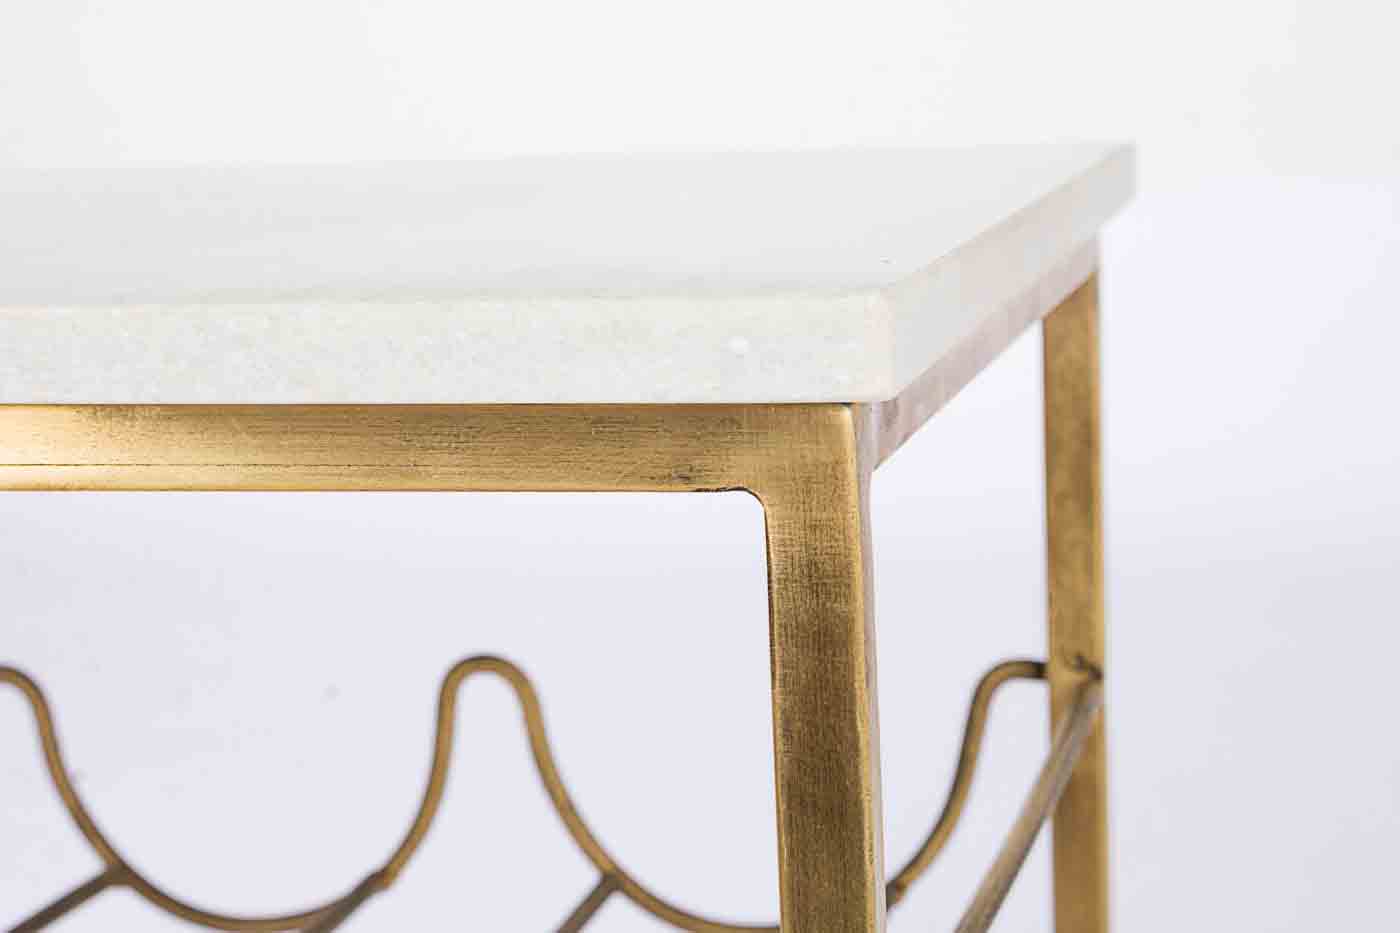 Der Beistelltisch Marmol verfügt über 12 Flaschenhalter. Gefertigt wurde der Tisch aus vergoldetem Metall. Die Tischplatte ist aus Marmor und unterstreicht das klassische Design.